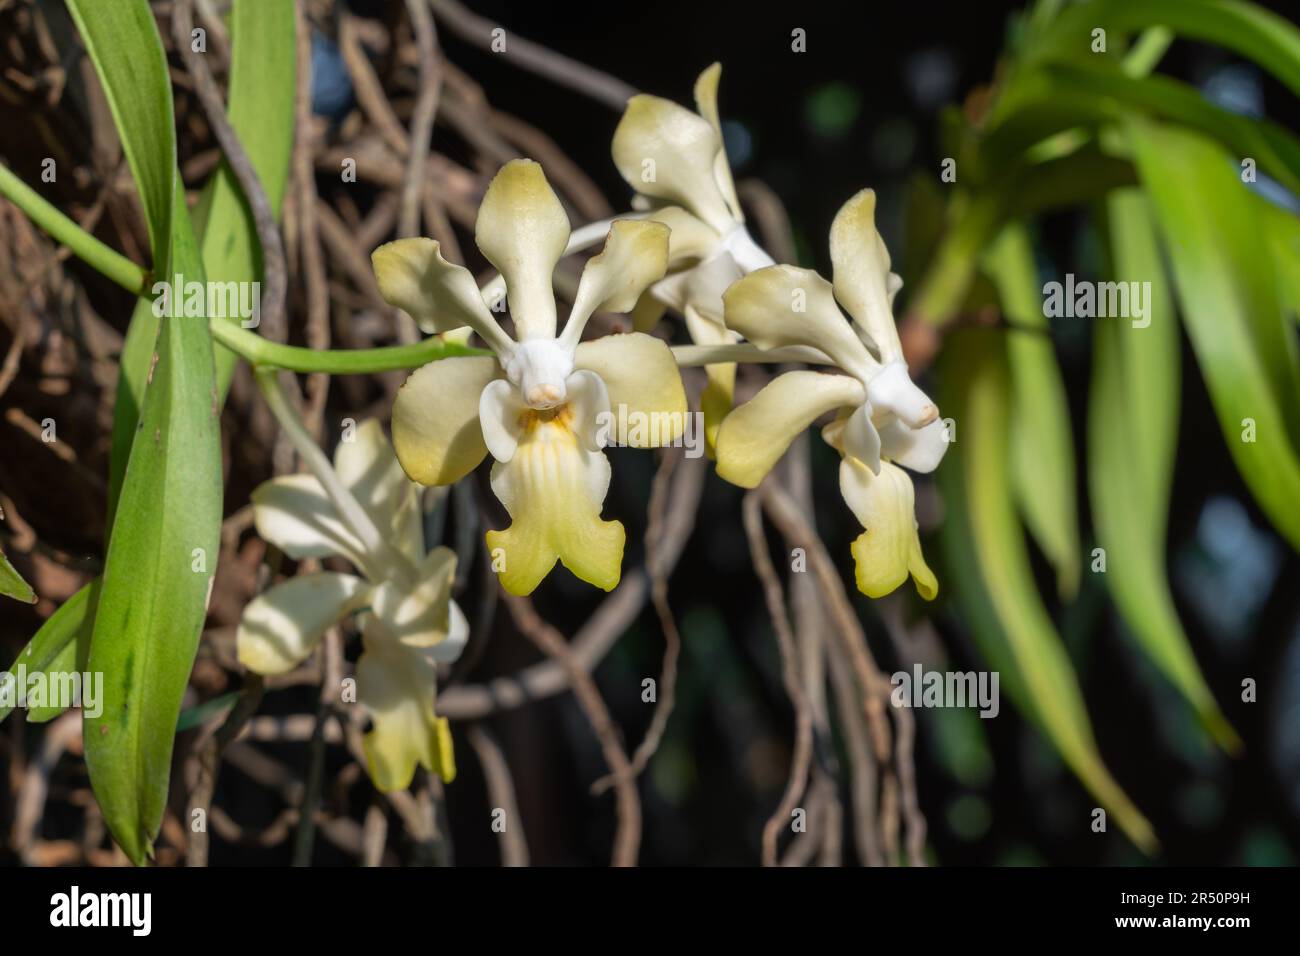 Gros plan sur les espèces épiphytiques d'orchidées vanda denisoniana fleurs jaunes et blanches qui fleurissent à l'extérieur dans le jardin tropical Banque D'Images